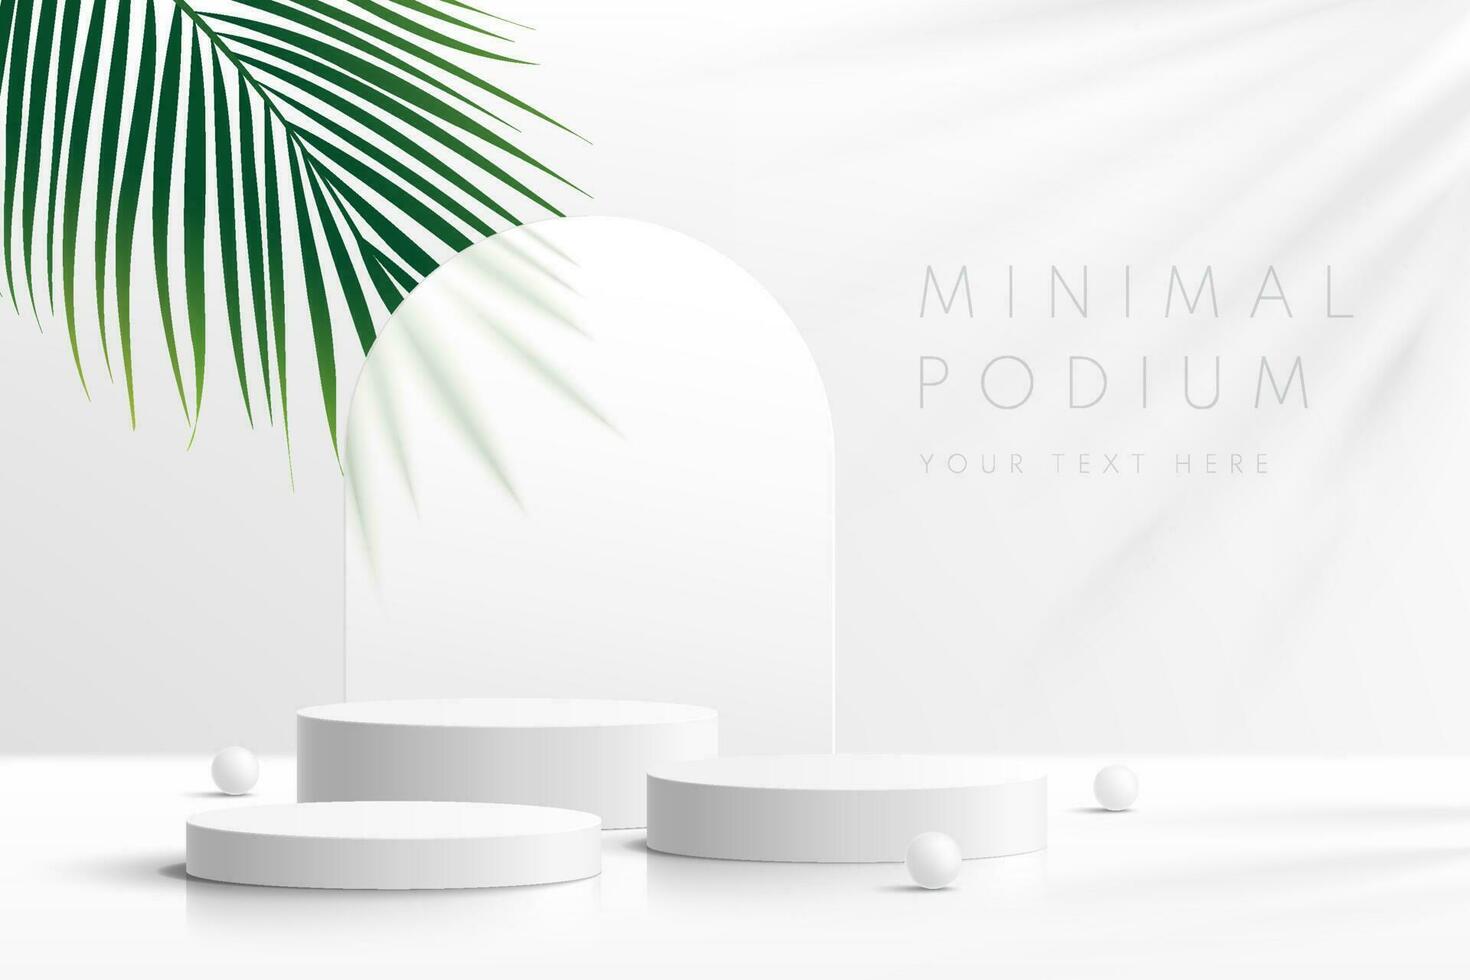 pódio de pedestal de cilindro 3d branco realista com folha de palmeira verde. cena mínima para vitrine de palco de produtos, exibição de promoção. vetor formas geométricas na sombra. design de quarto de estúdio limpo abstrato.